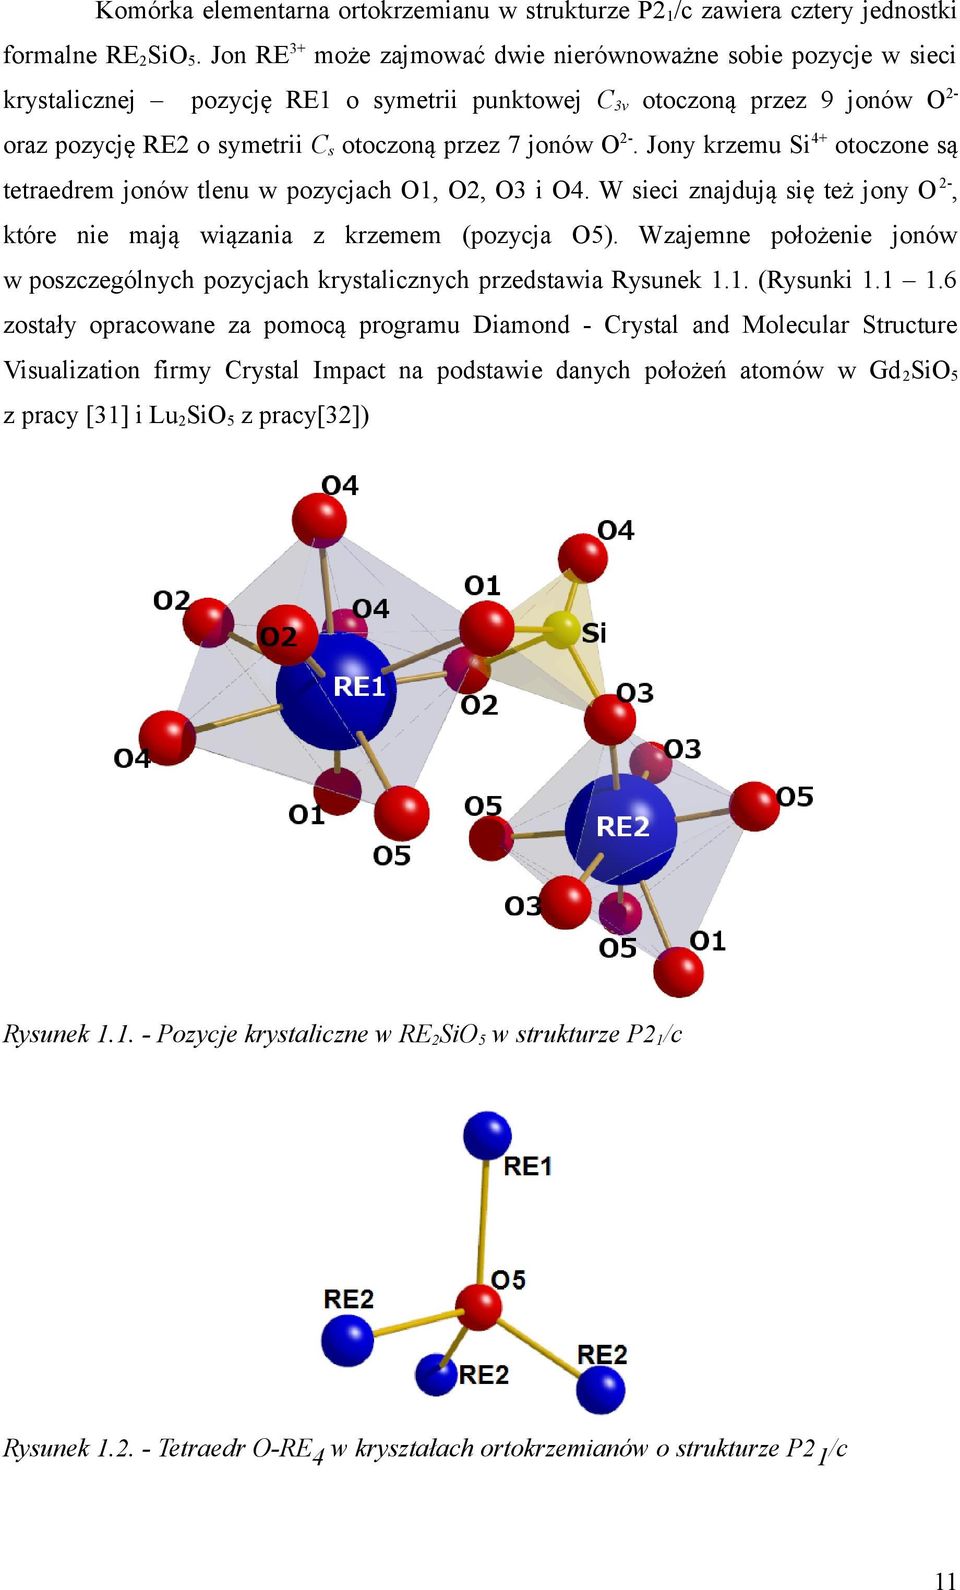 Jony krzemu Si+ otoczone są tetraedrem jonów tlenu w pozycjach O1, O2, O3 i O. W sieci znajdują się też jony O 2-, które nie mają wiązania z krzemem (pozycja O5).